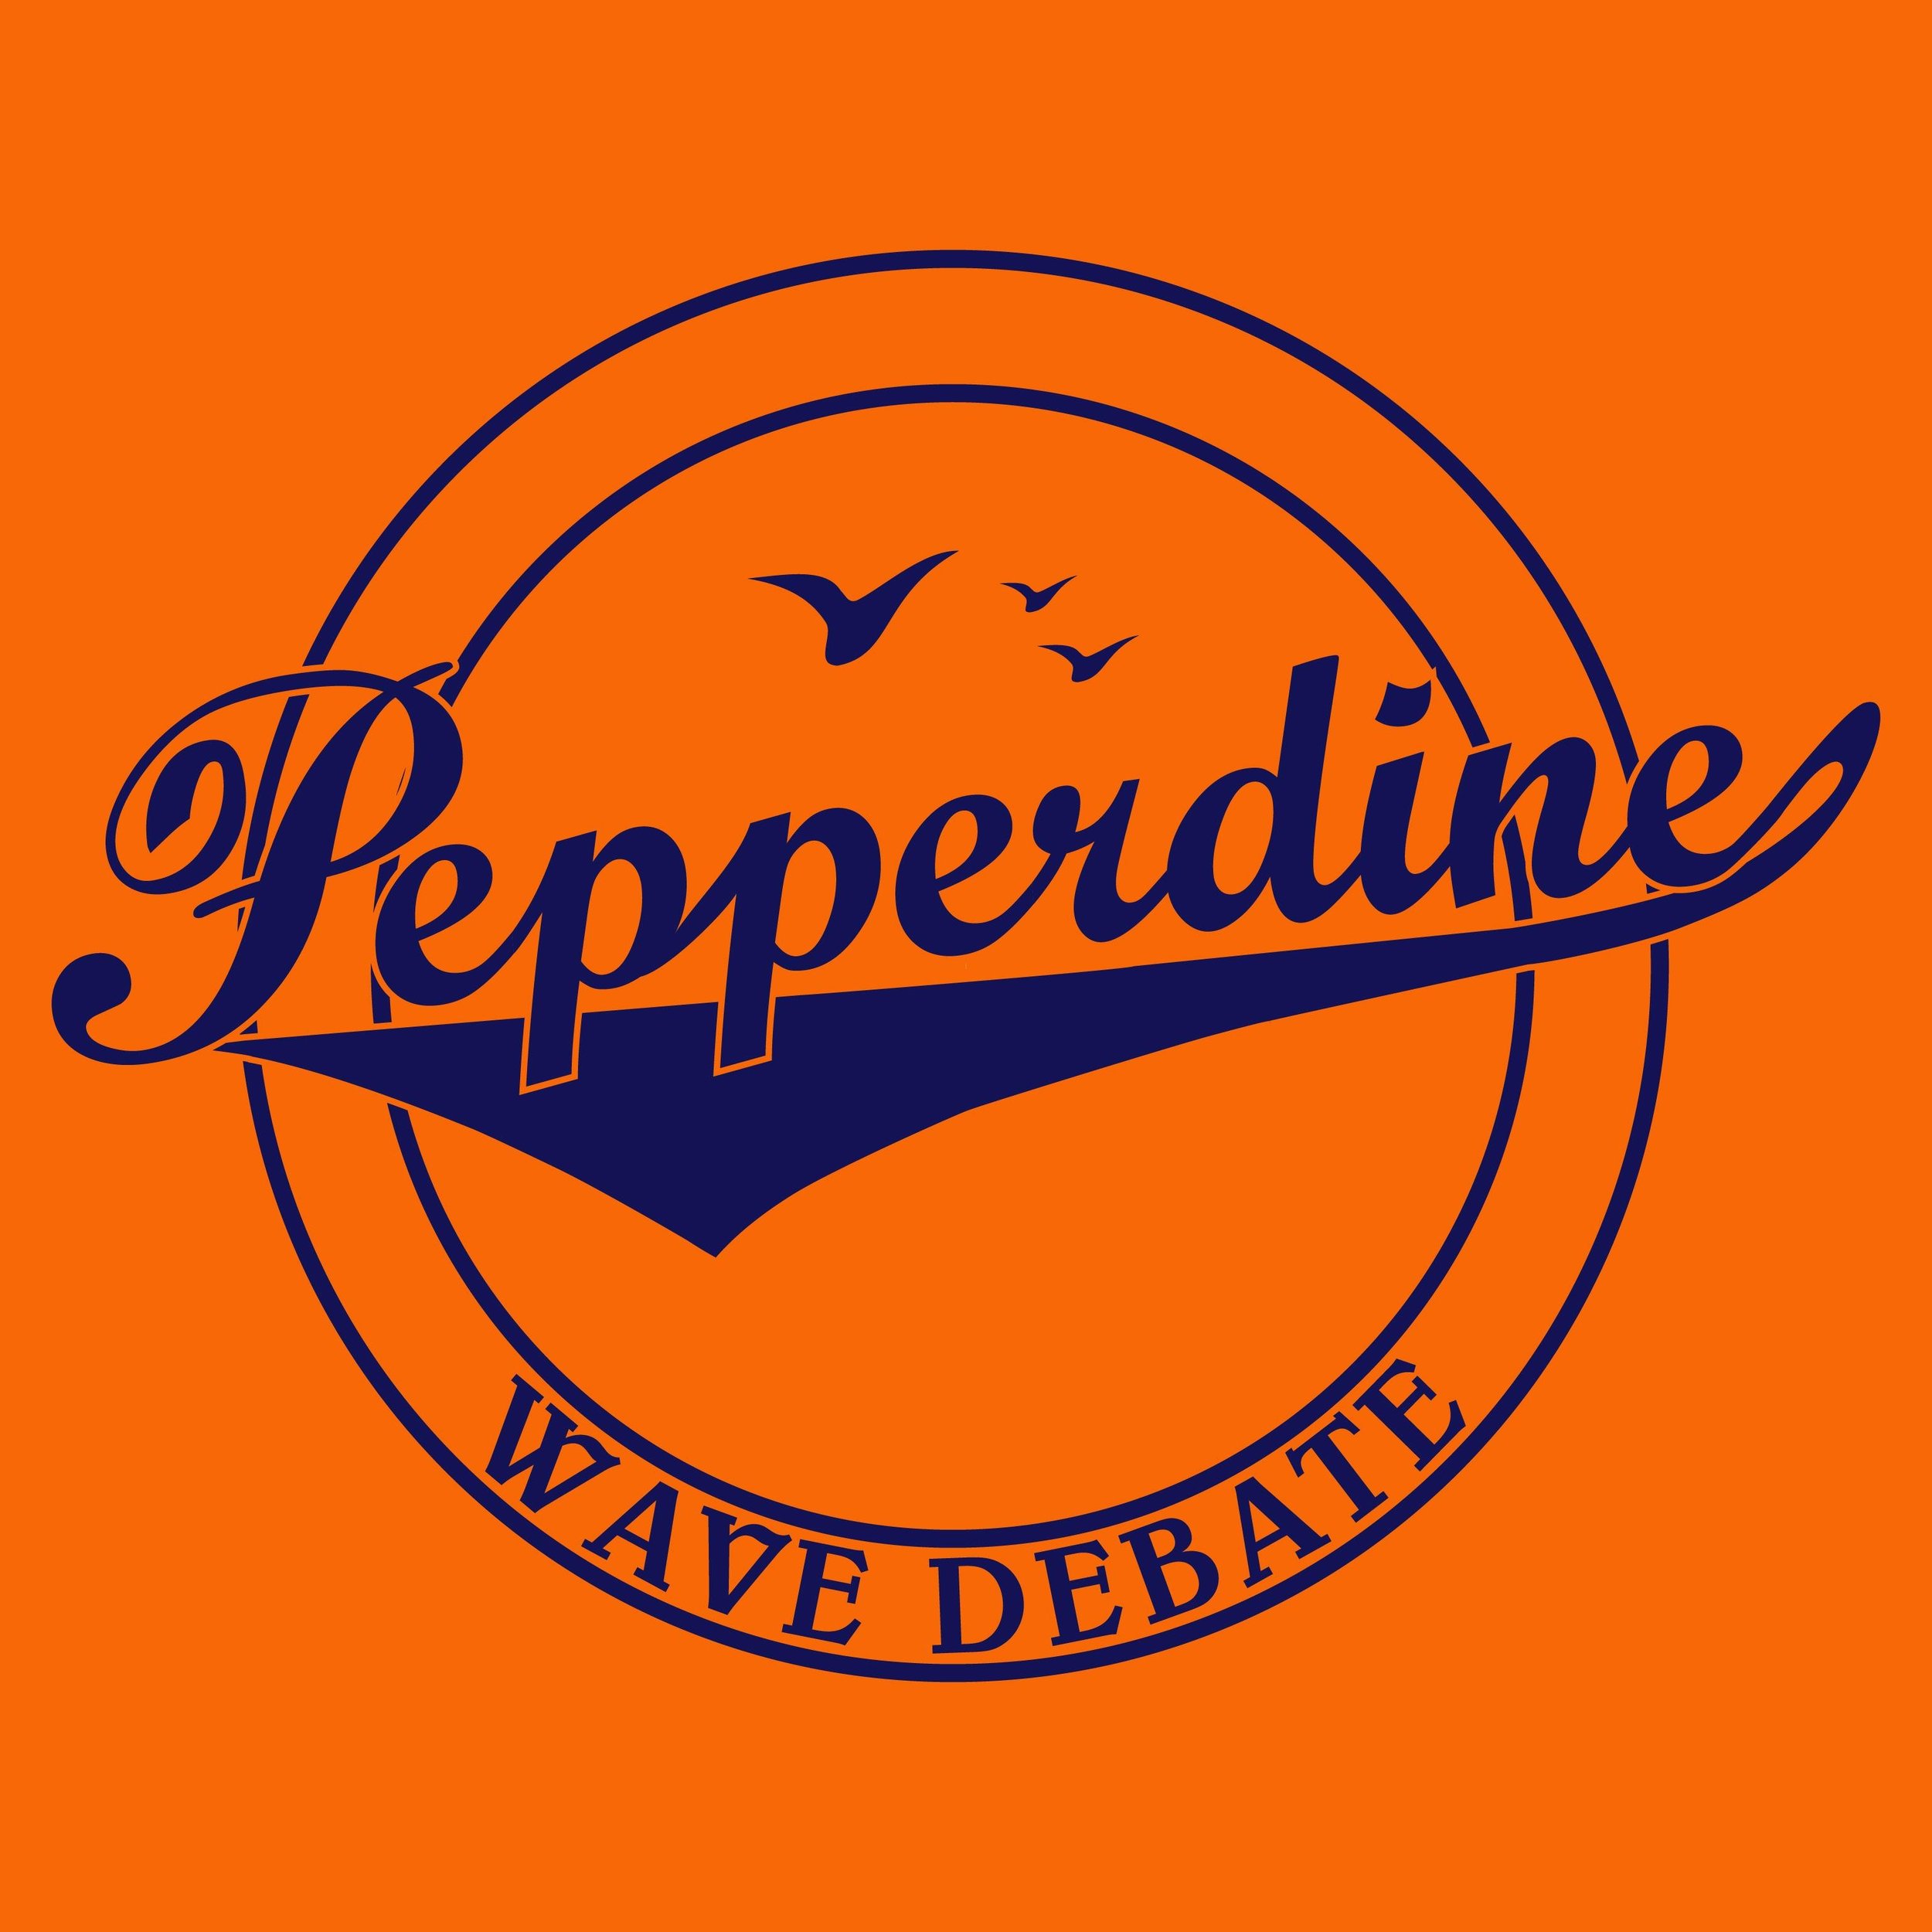 Pepperdine Debate Team